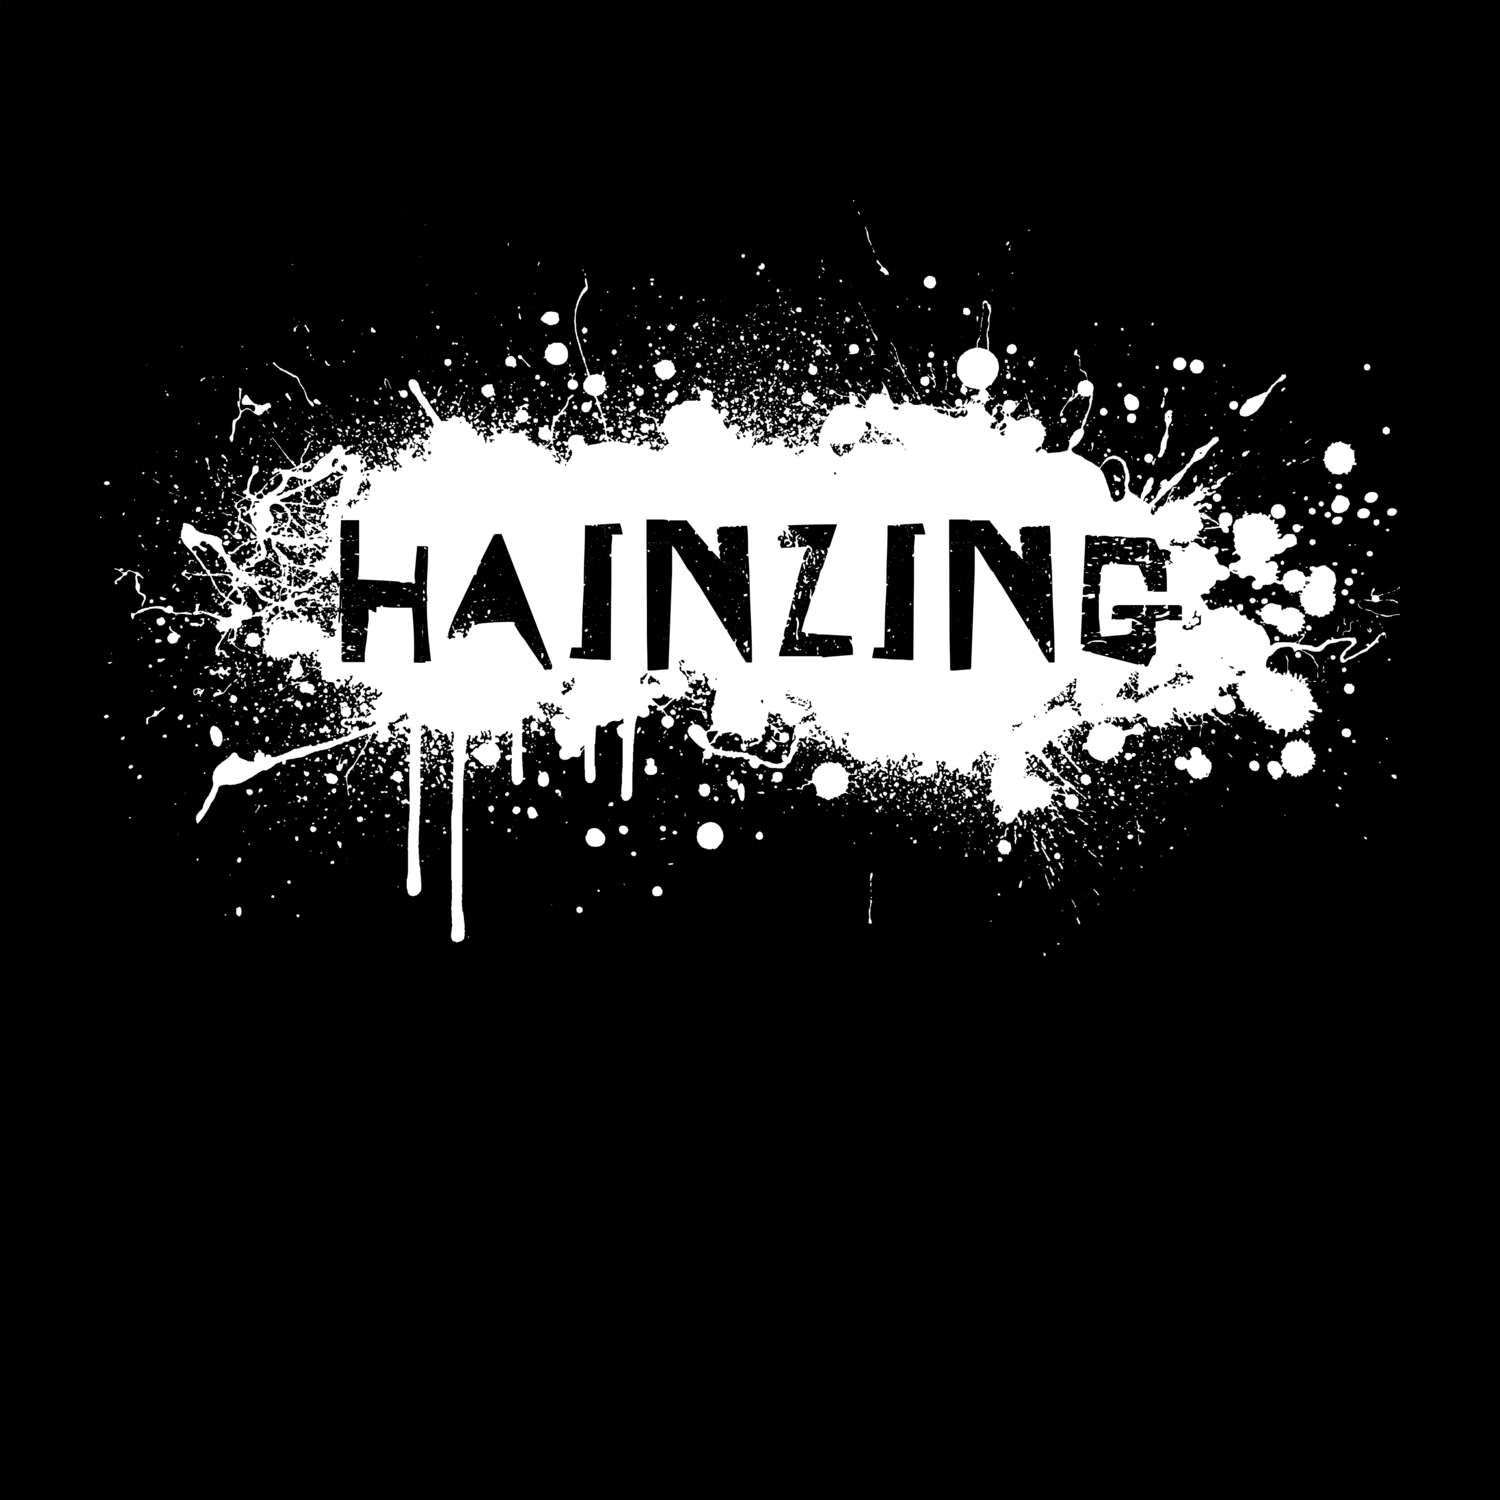 Hainzing T-Shirt »Paint Splash Punk«